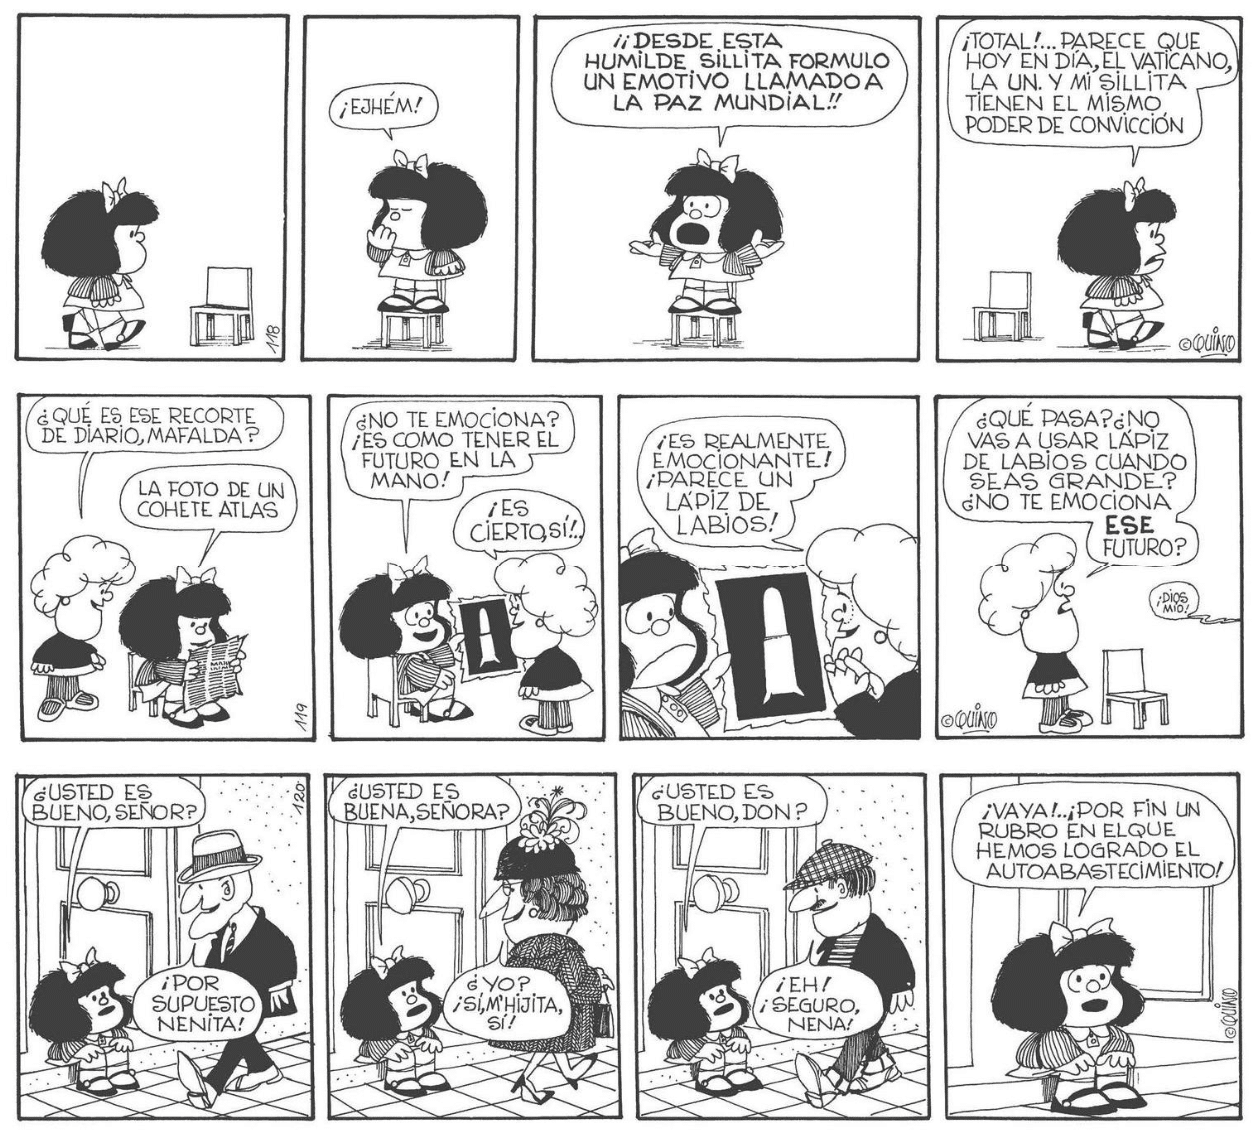 Los invidentes también podrán disfrutar de los cómic de Mafalda, ¡por fin en braille! 40